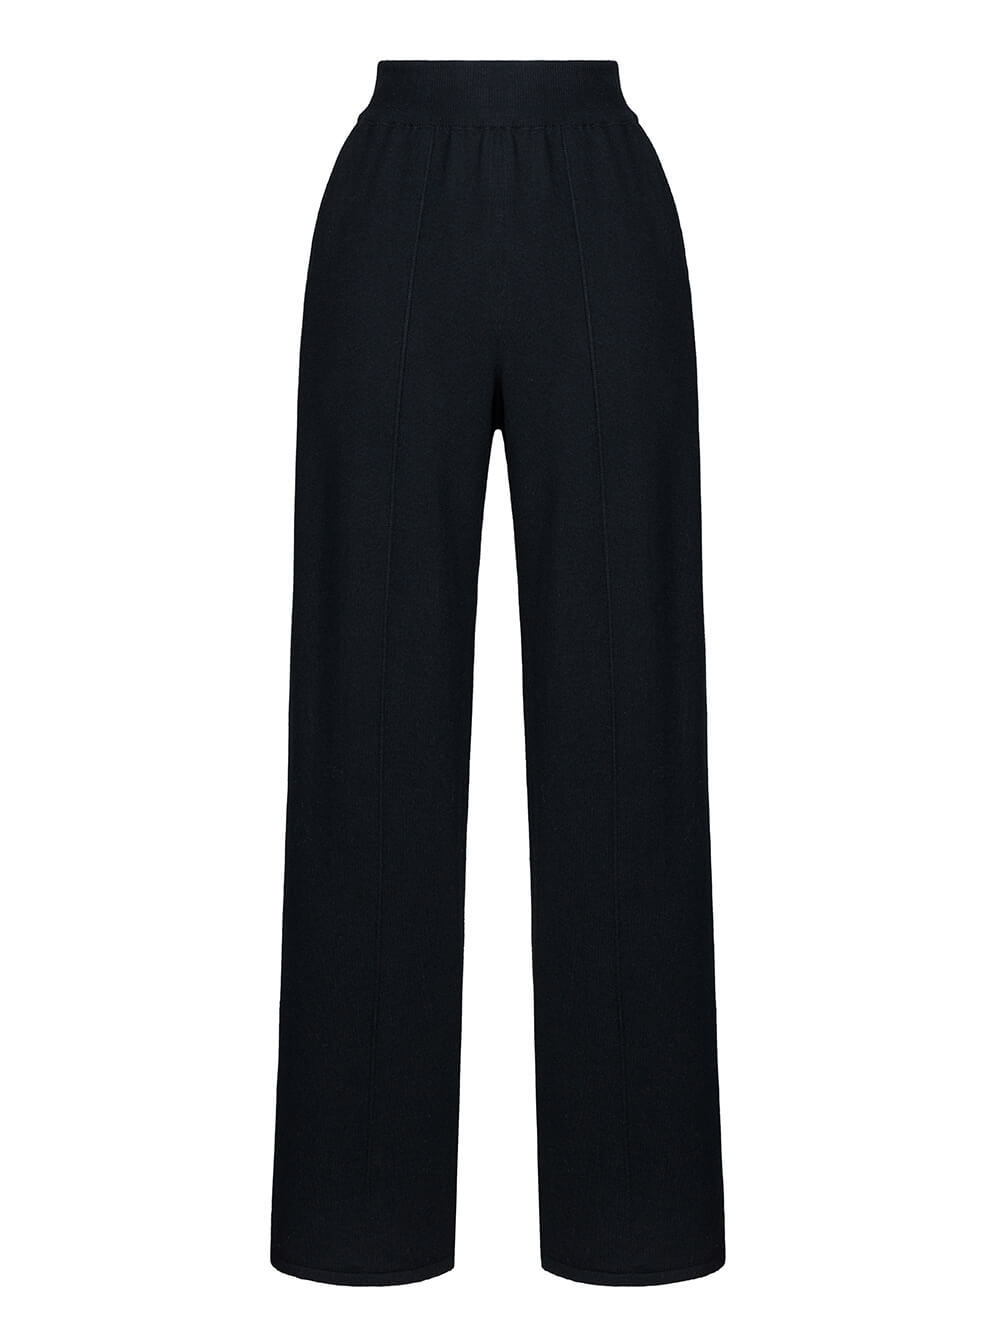 Женские брюки черного цвета из шерсти и кашемира - фото 1